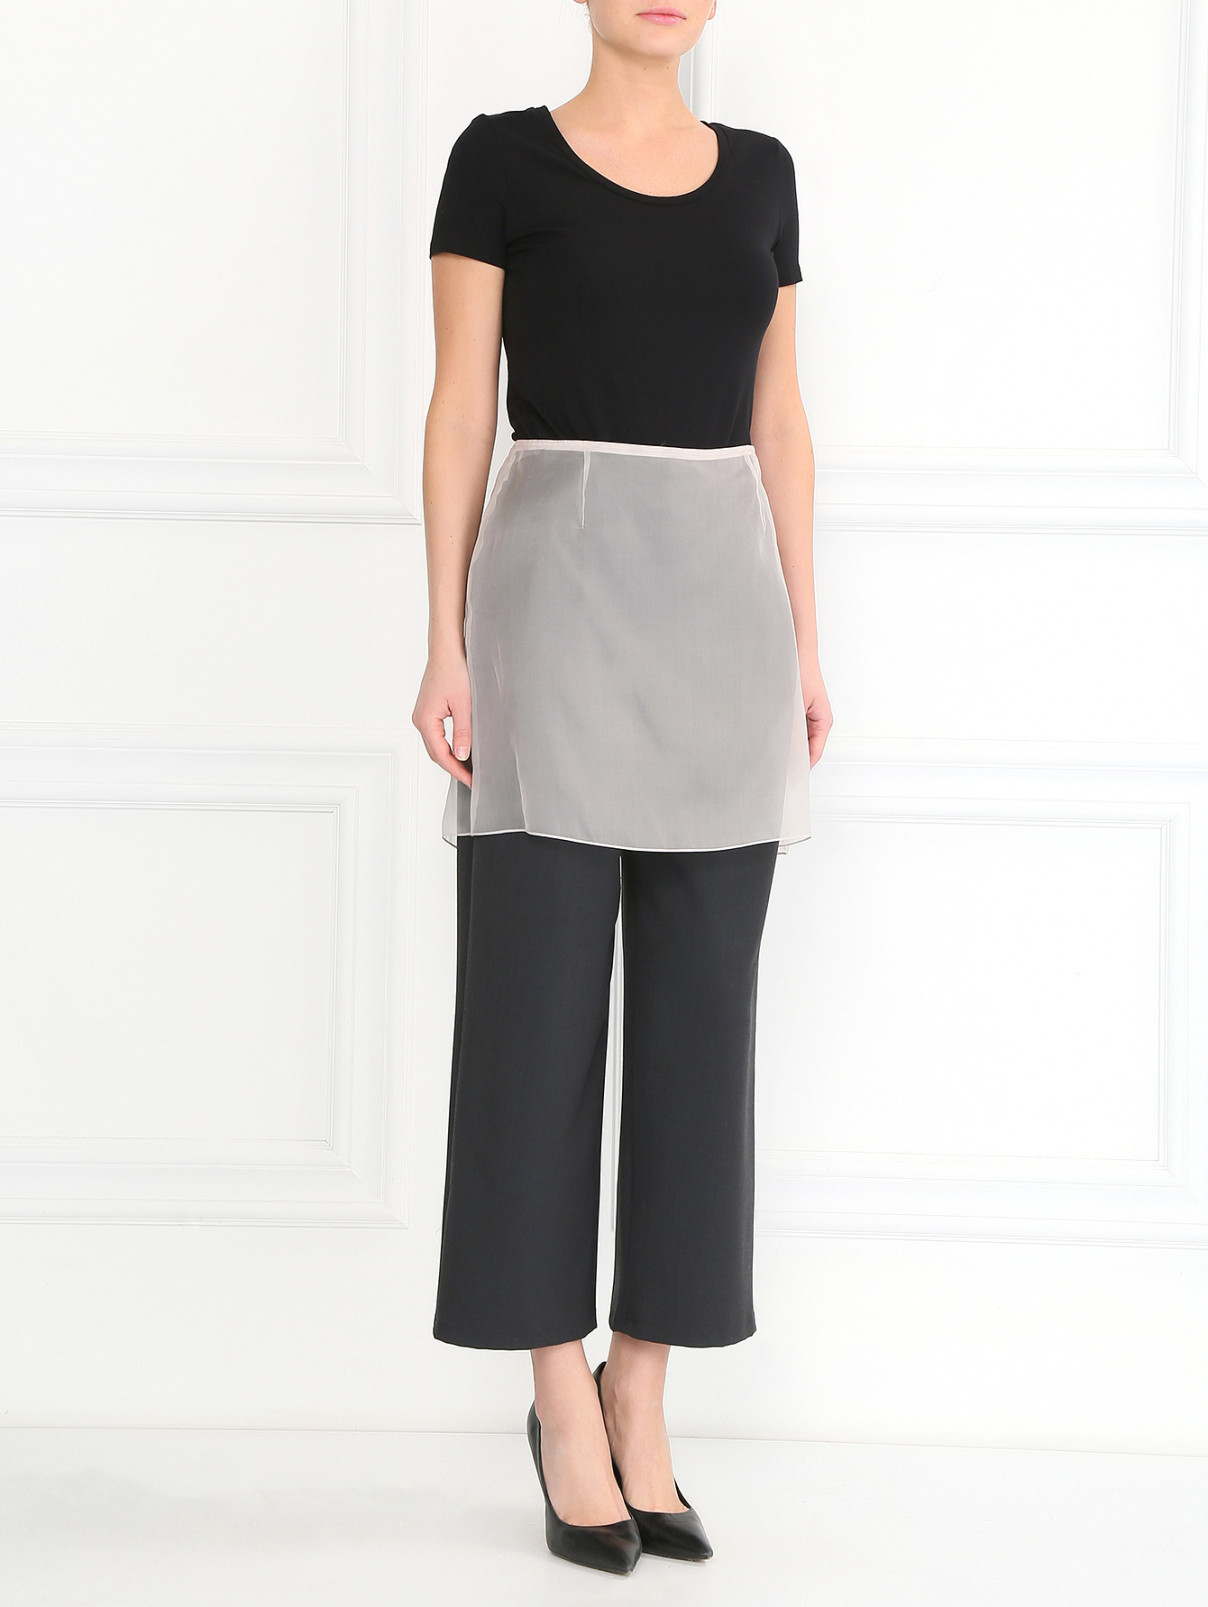 Прозрачная юбка-мини из шелка A La Russe  –  Модель Общий вид  – Цвет:  Белый